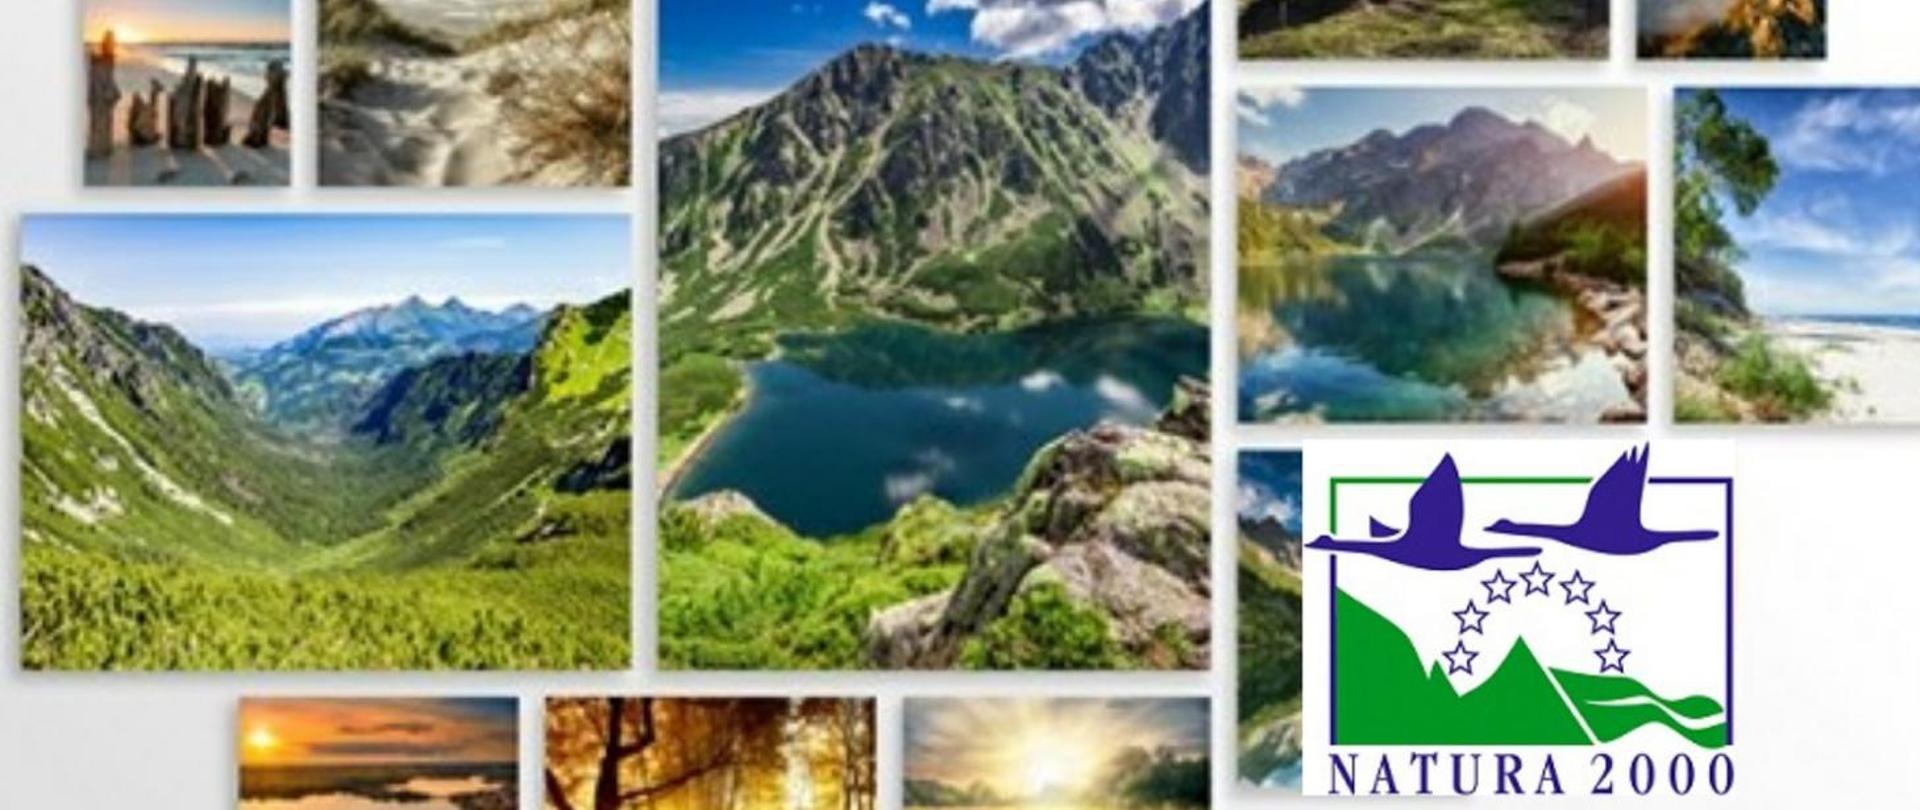 Grafika przedstawia 14 zdjęć z widokiem na góry, jeziora, plaże oraz las. W prawym dolnym rogu grafiki znajduje się Logo Europejskiej Sieci Ekologicznej Natura 2000.